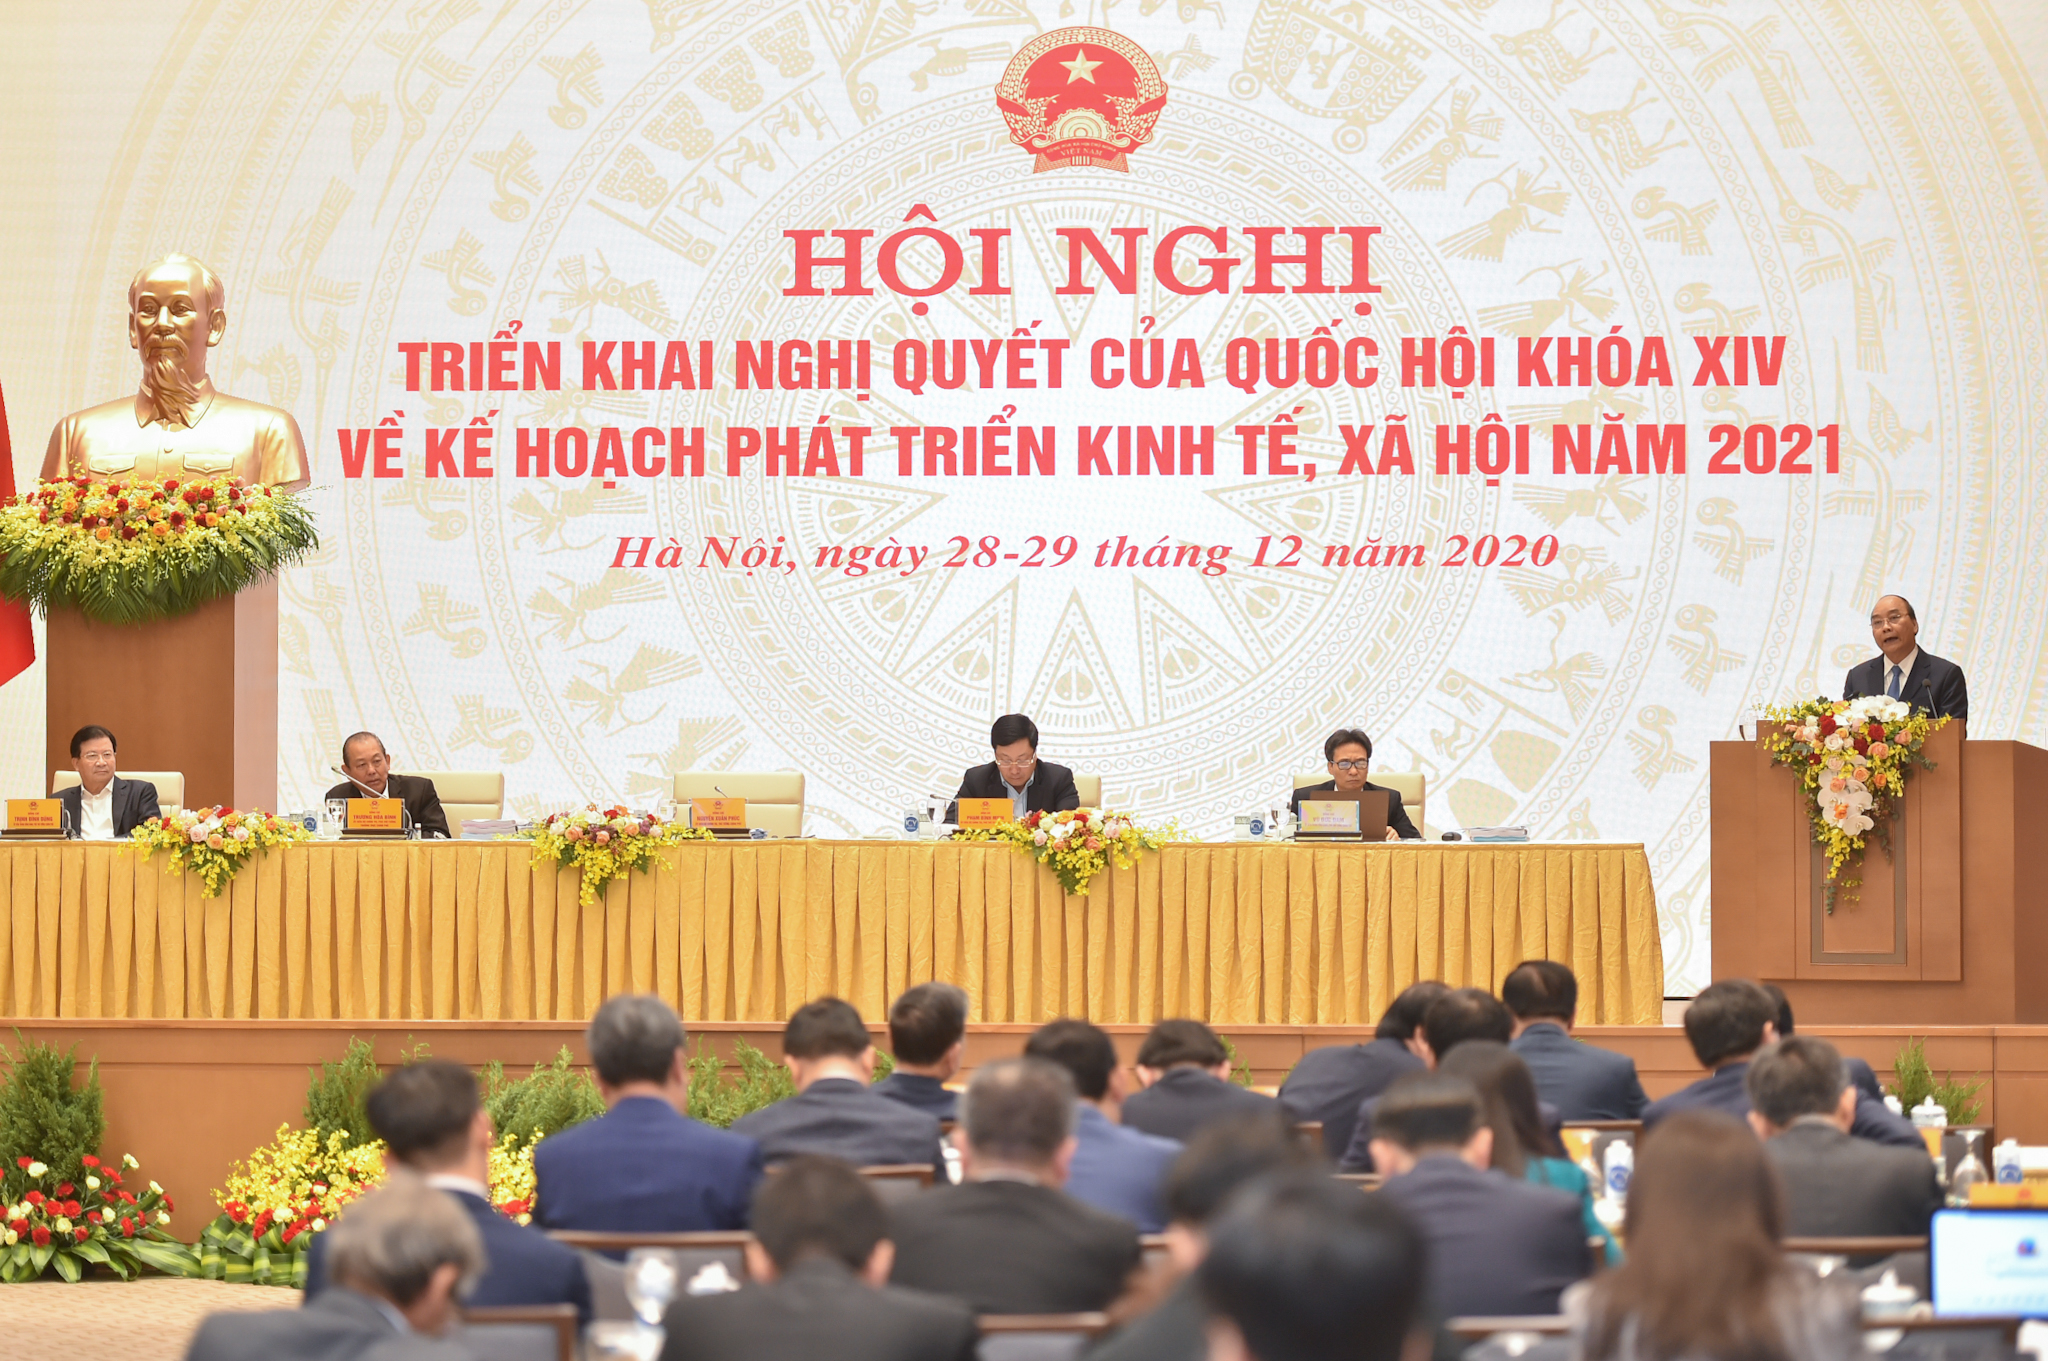 Thủ tướng Nguyễn Xuân Phúc: Không để xói mòn các yếu tố nền tảng vĩ mô đã dày công gây dựng